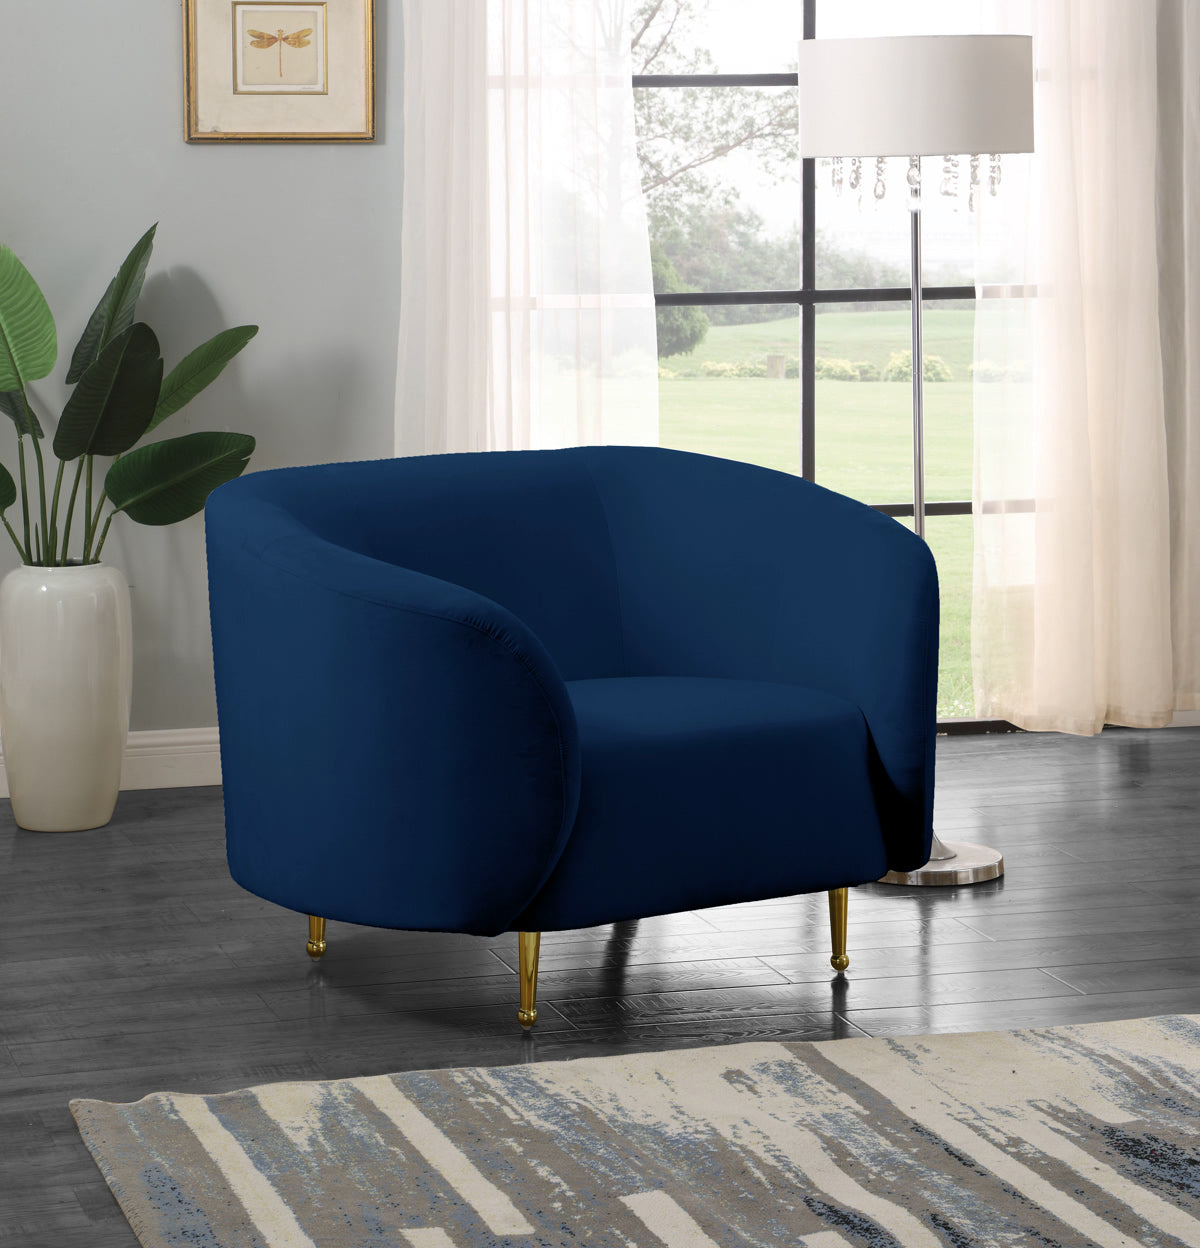 Meridian Furniture Lavilla Navy Velvet Chair